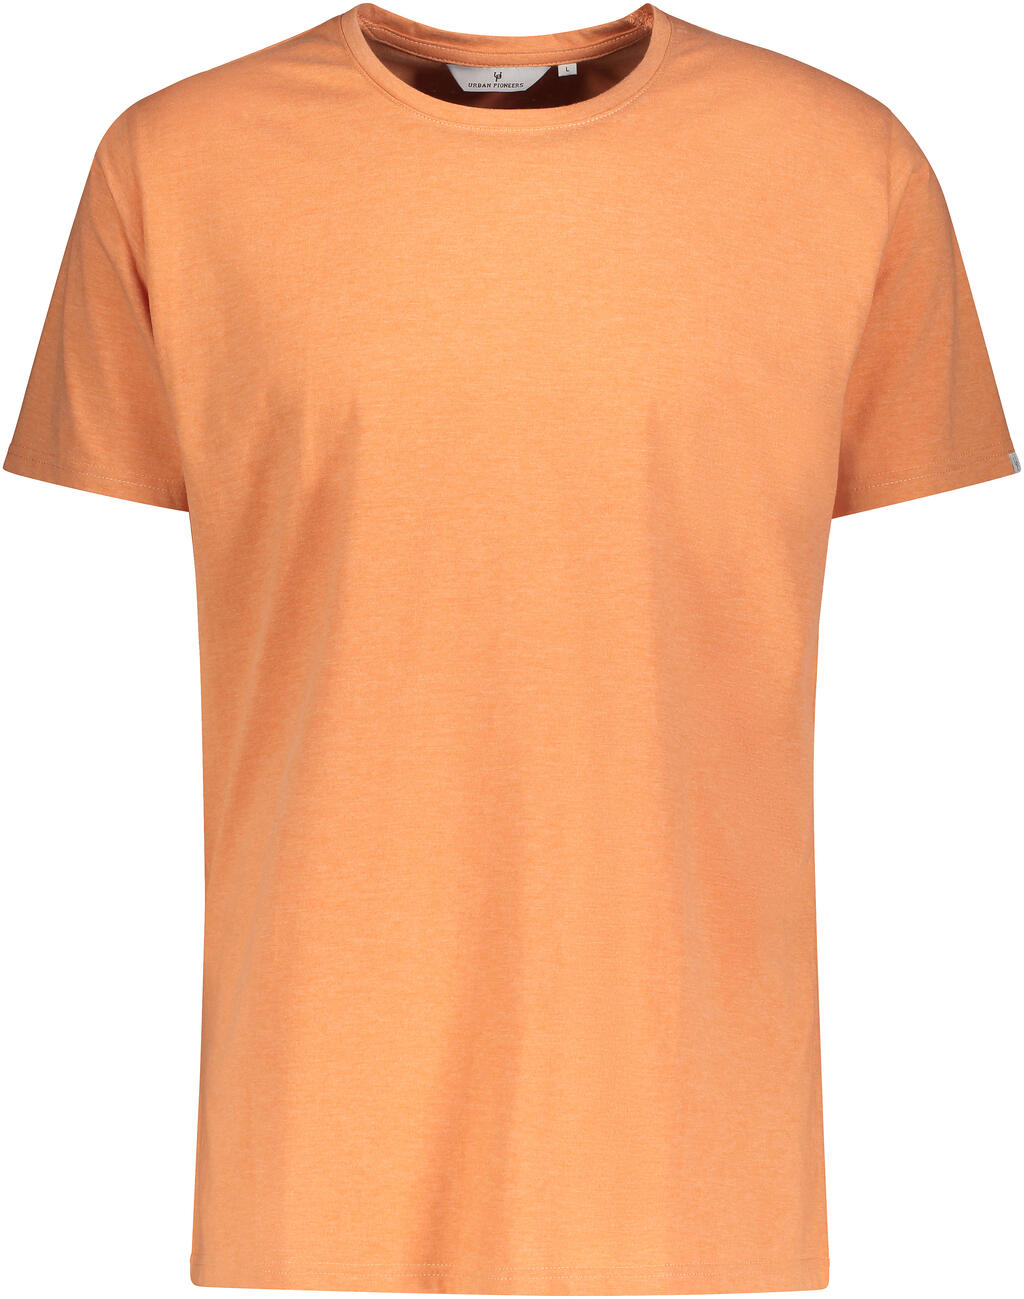 Niklas Basic Tee Burnt Orange Melange M Basic cotton T-shirt - Urban ...